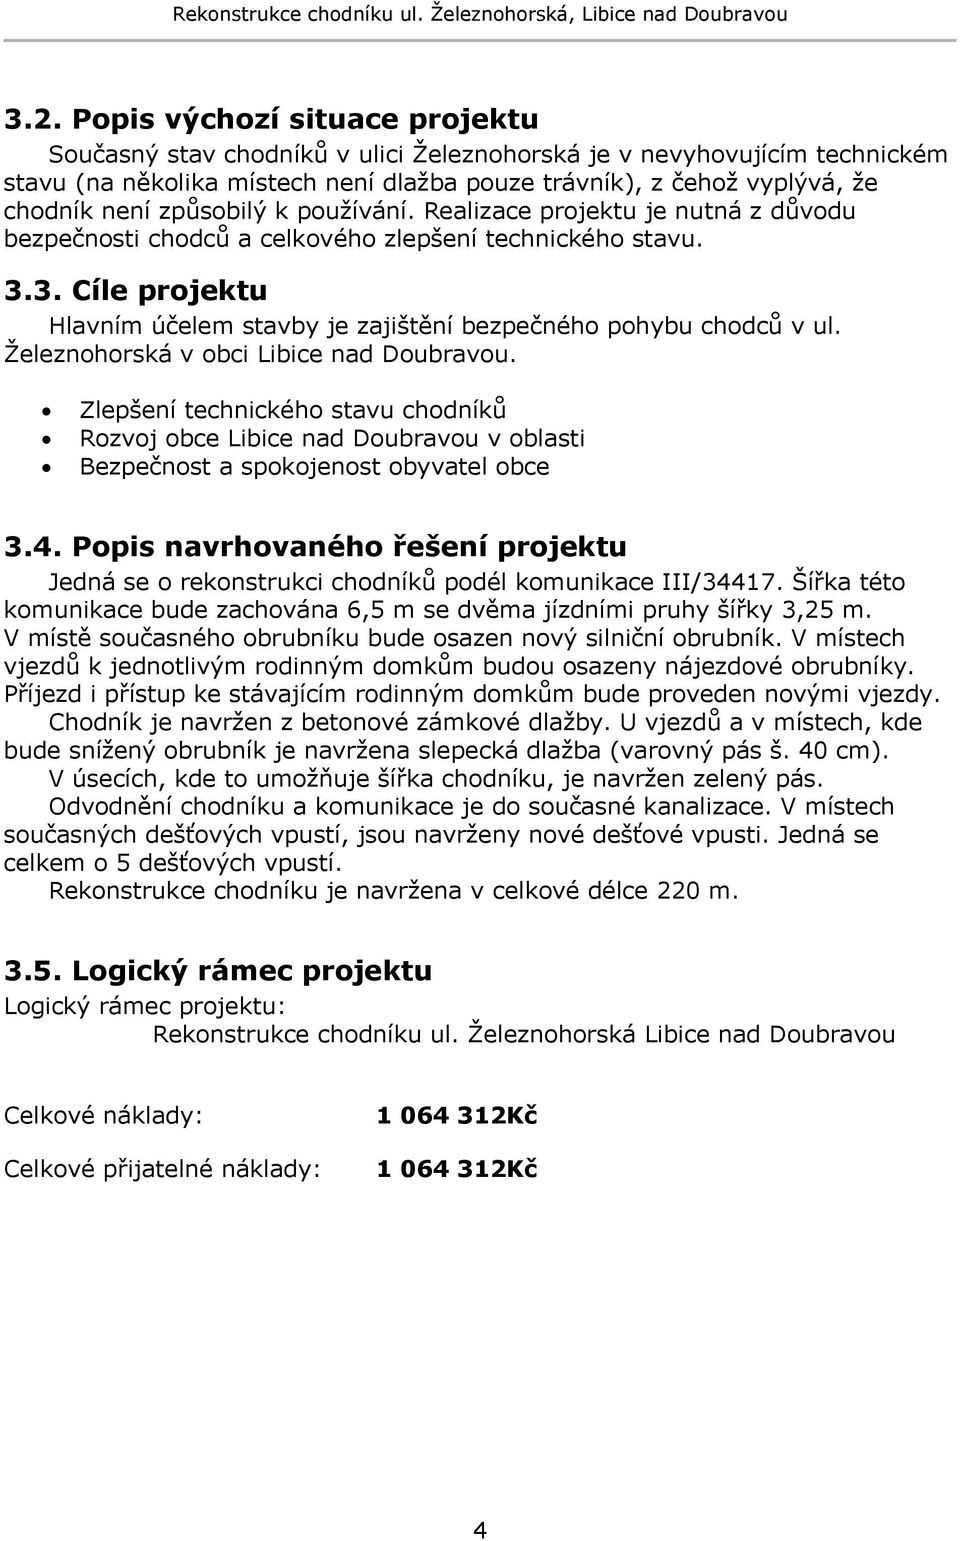 3. Cíle projektu Hlavním účelem stavby je zajištění bezpečného pohybu chodců v ul. Ţeleznohorská v obci Libice nad Doubravou.